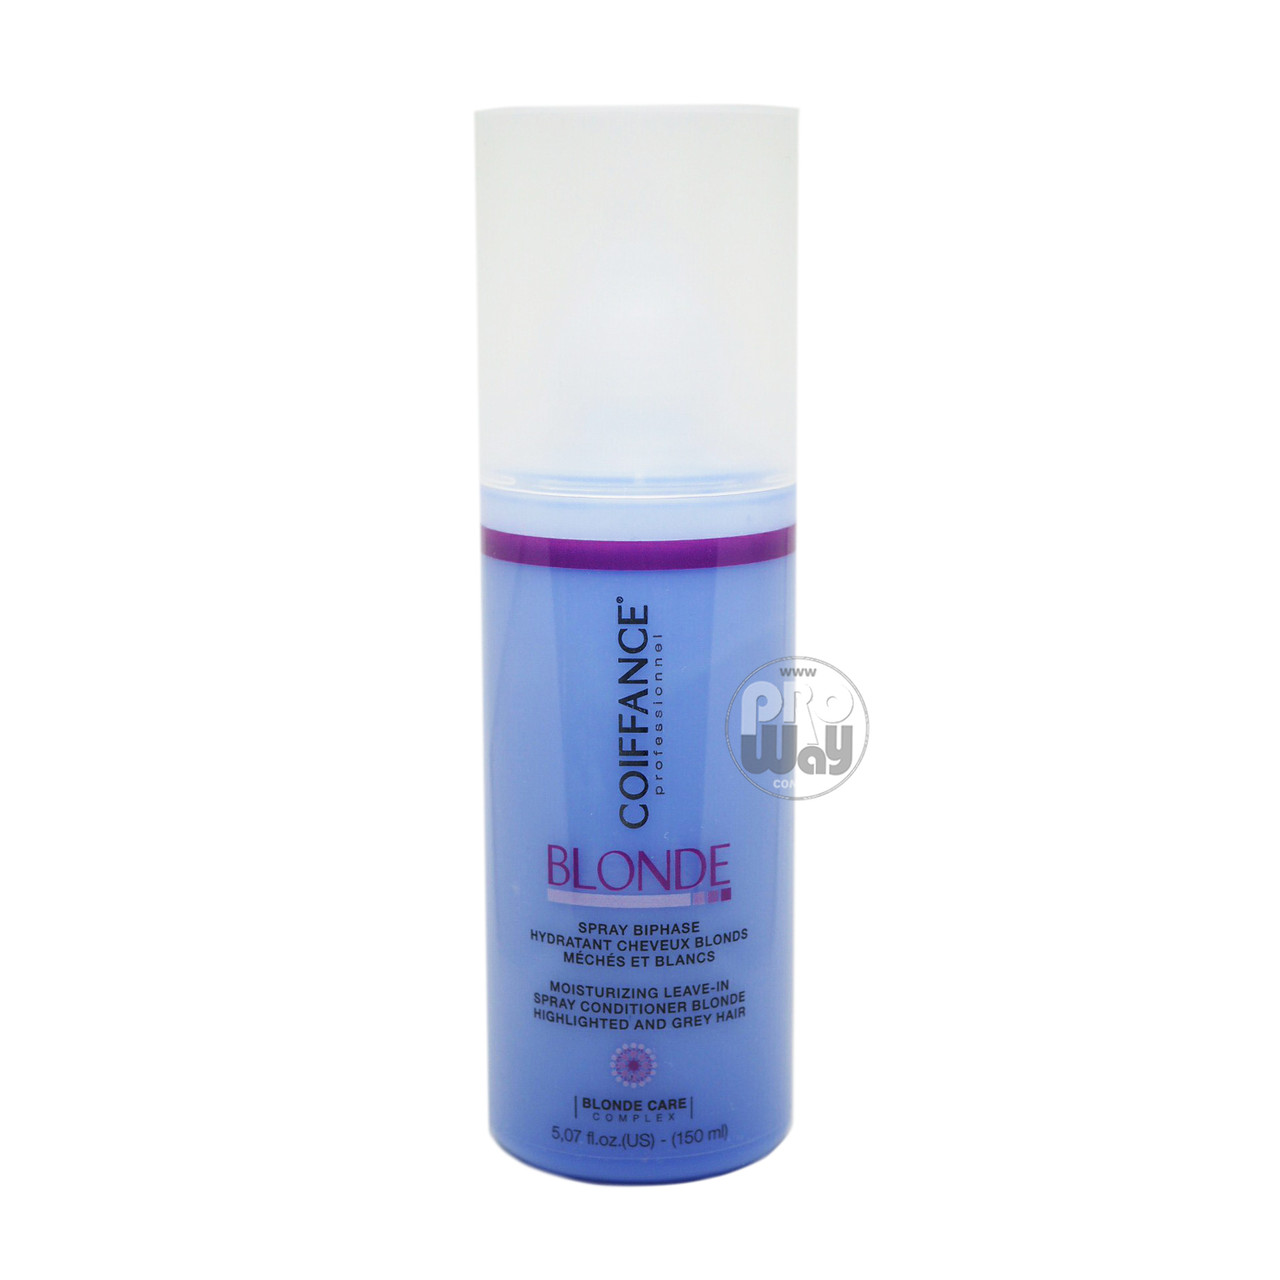 COIFFANCE Moisturizing Leave-In Spray Двофазний зволожувальний спрей-кондиціонер для світлого або сивого волосся